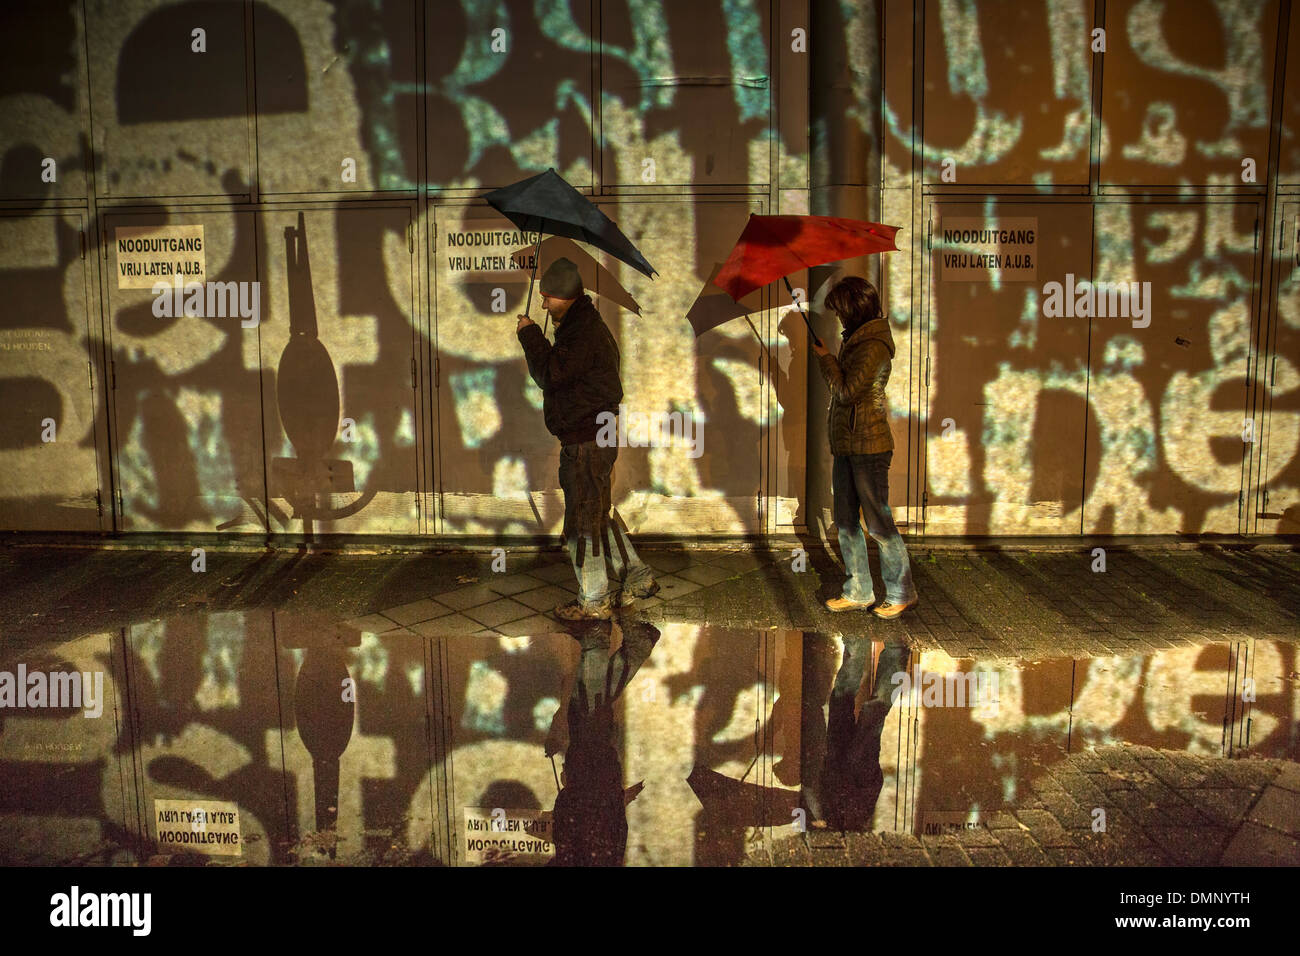 Pays-bas, Eindhoven, Light festival appelé GLOW 2013. Couple avec Senz storm parapluie à la performance. Randonnée pédestre Banque D'Images